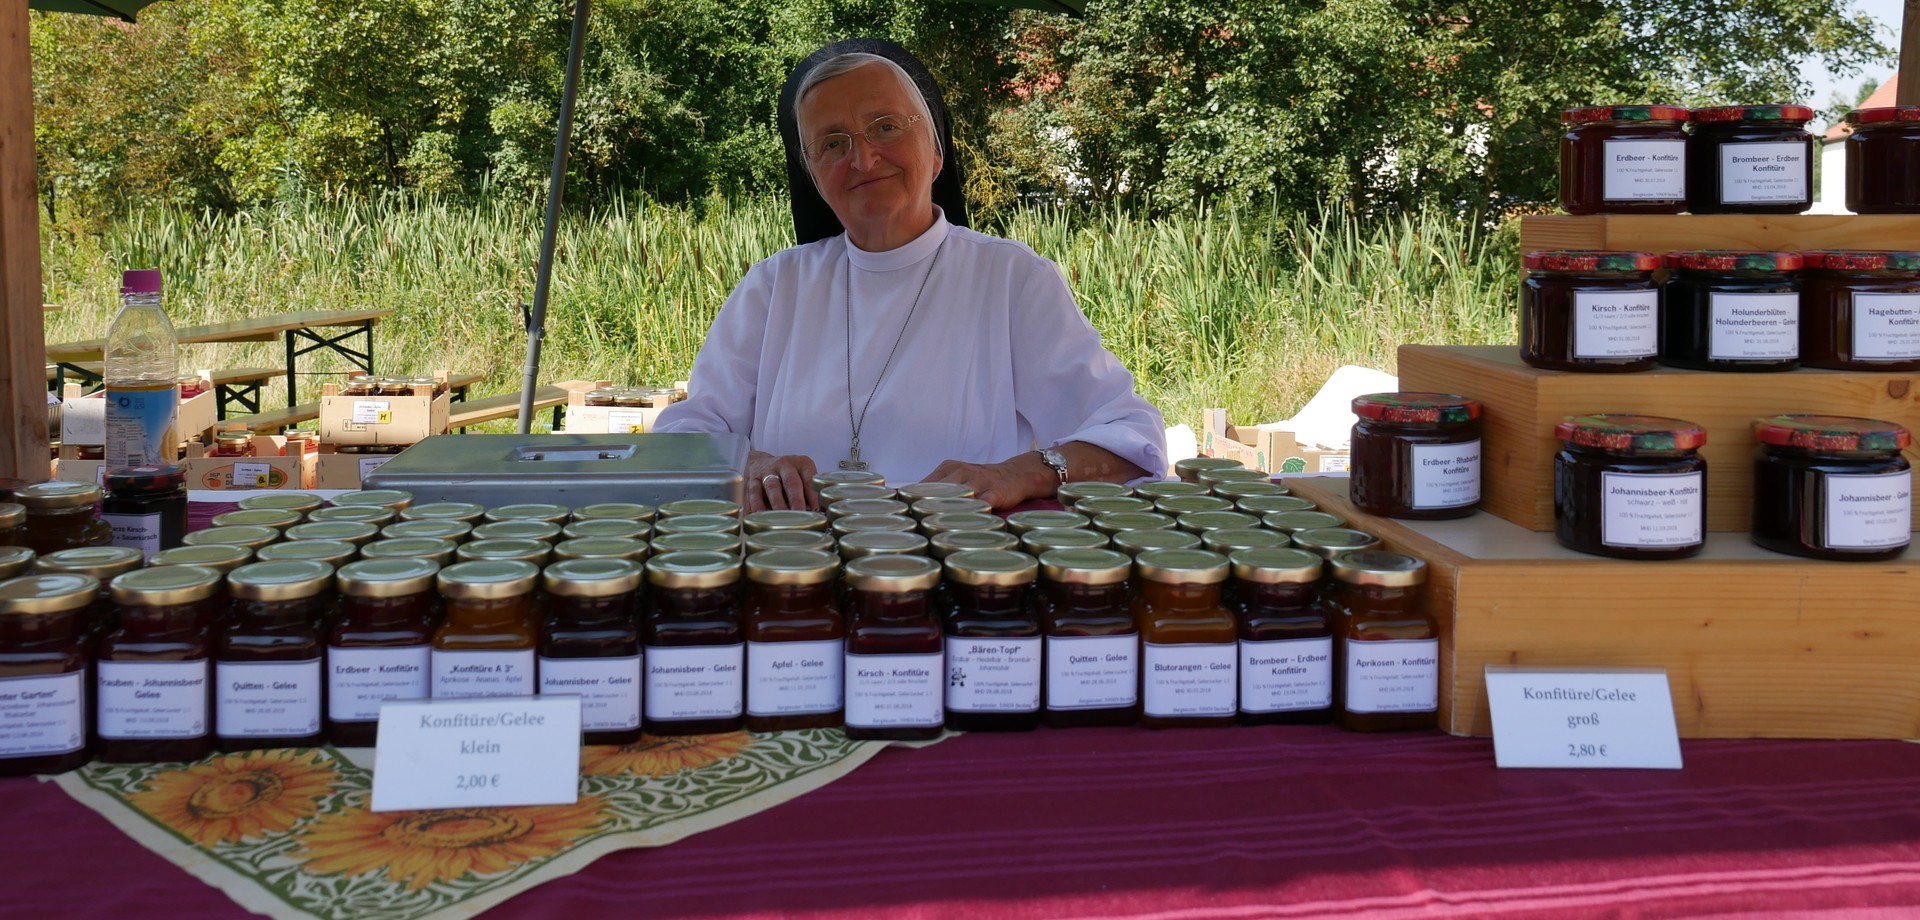 Auf dem Foto sieht man eine Ordensschwester, die die Marmelade aus dem Bergkloster Bestwig präsentiert.

Foto: LWL